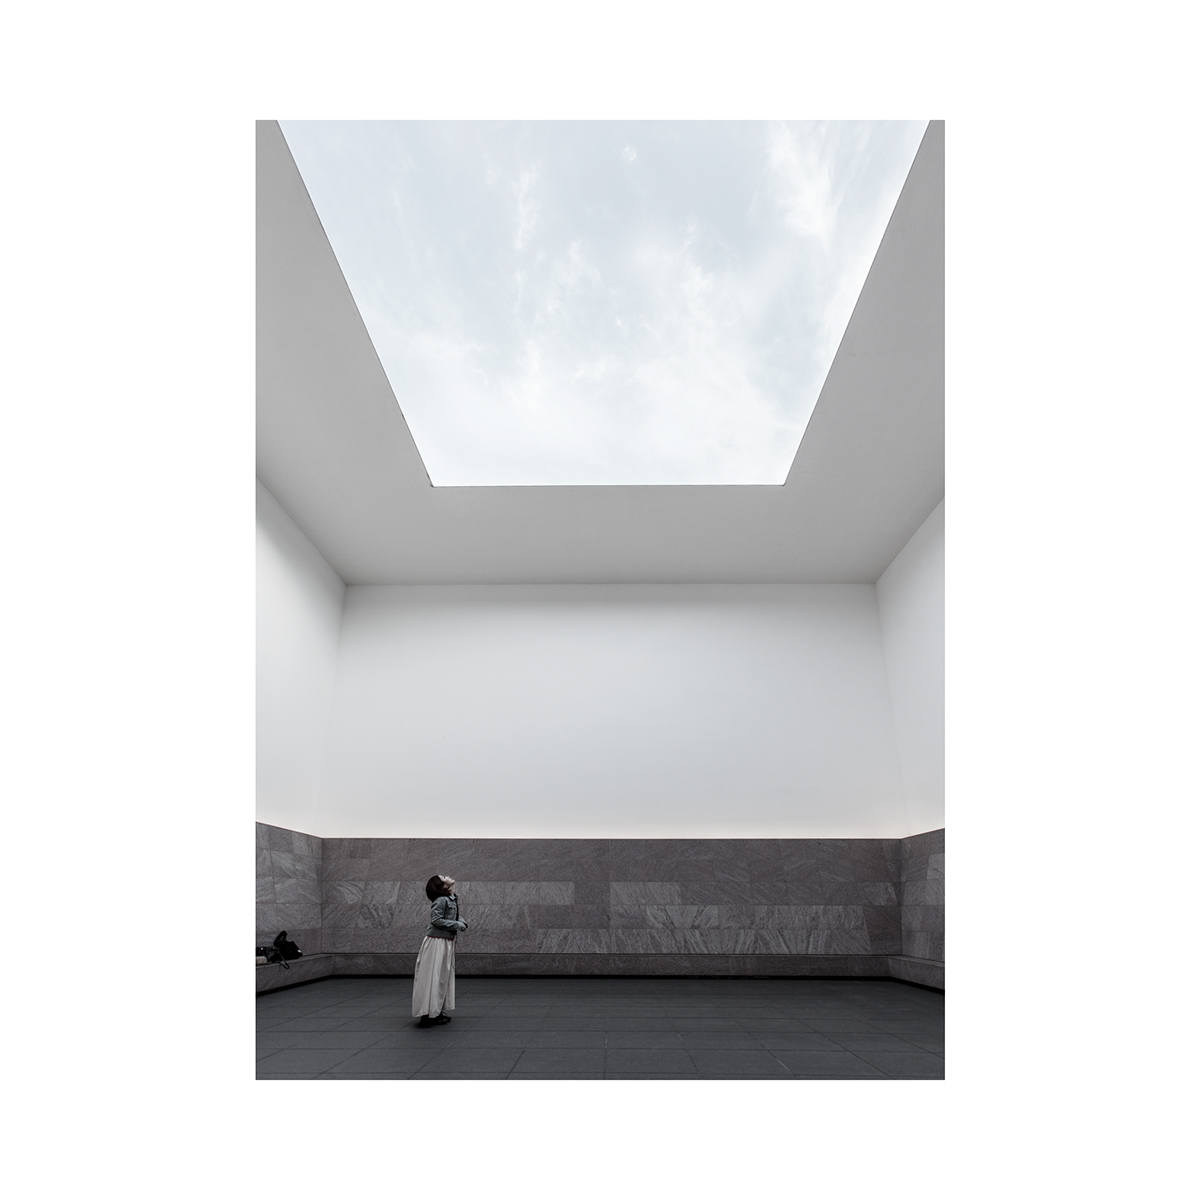 Adobe Portfolio 21st century museum sanaa kanazawa japan architect White box Coast rasmus Hjortshøj